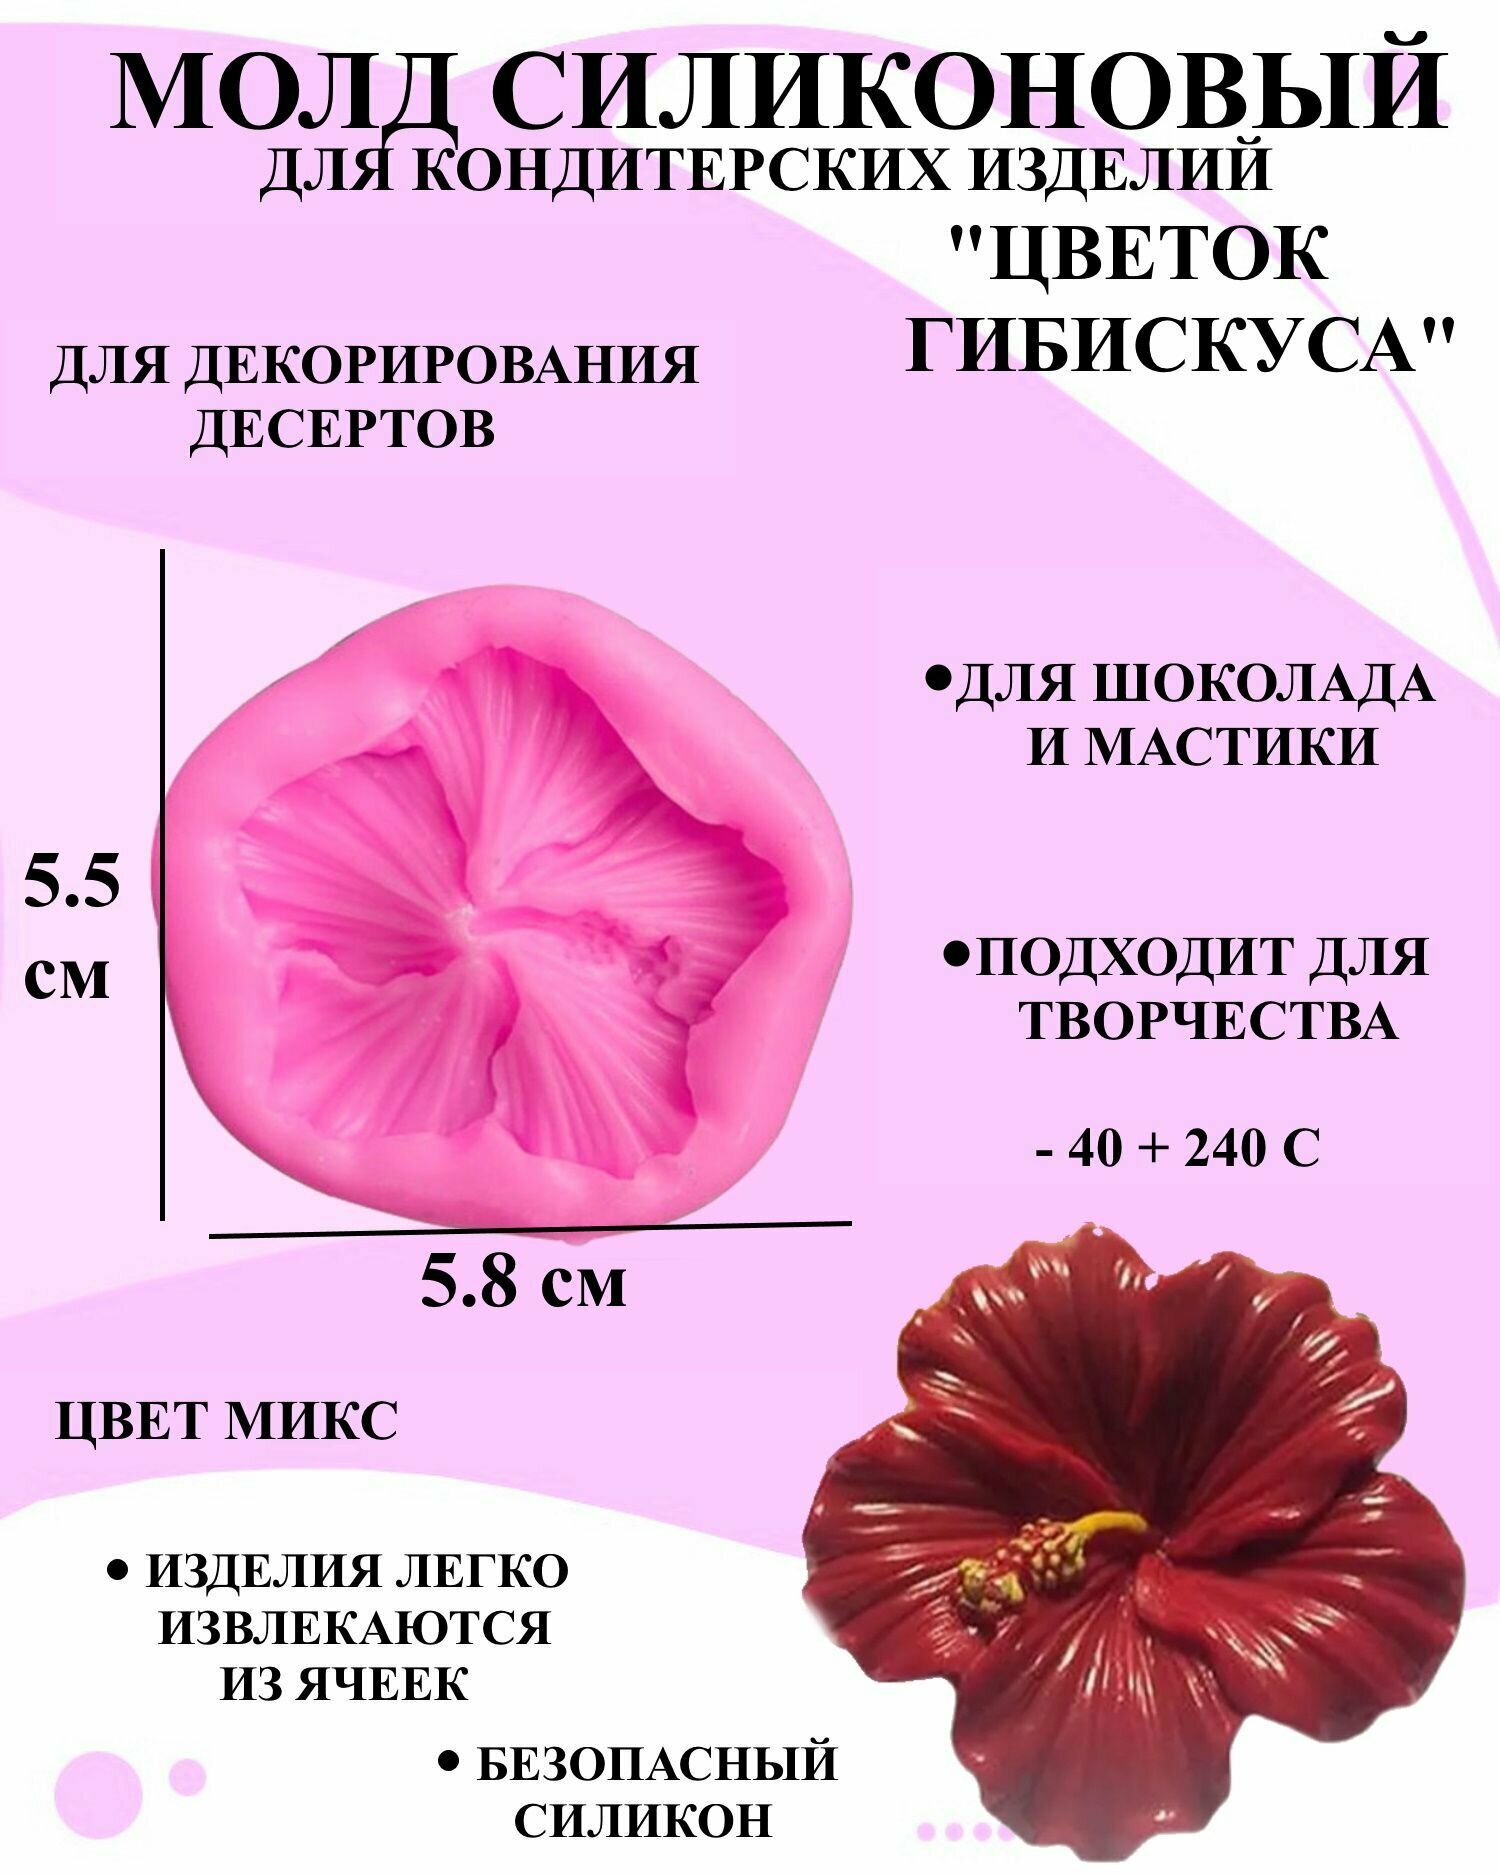 Молд силиконовый цветок гибискуса 5.8x5.5 см форма для мастики и шоколада гибискус молд для украшения